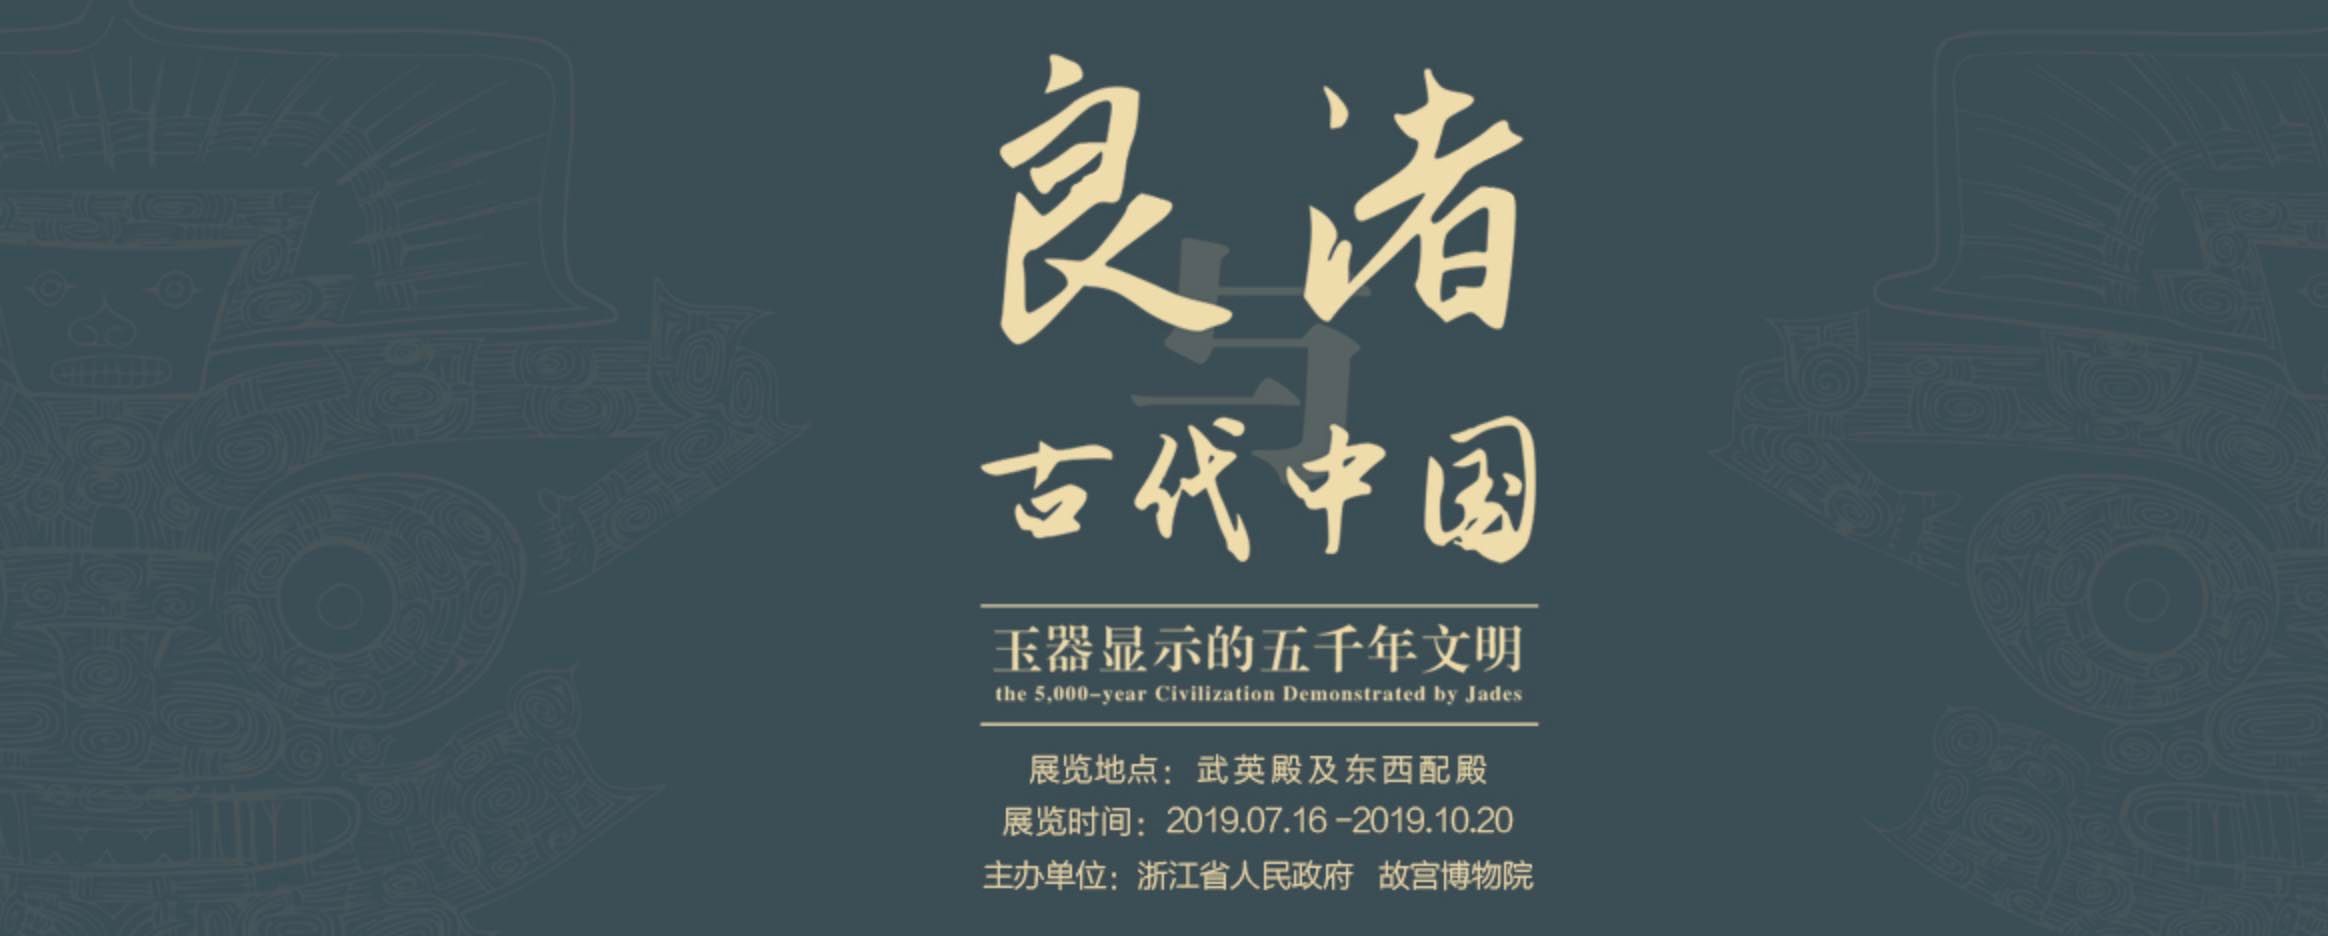 良渚与古代中国——玉器显示的五千年文明